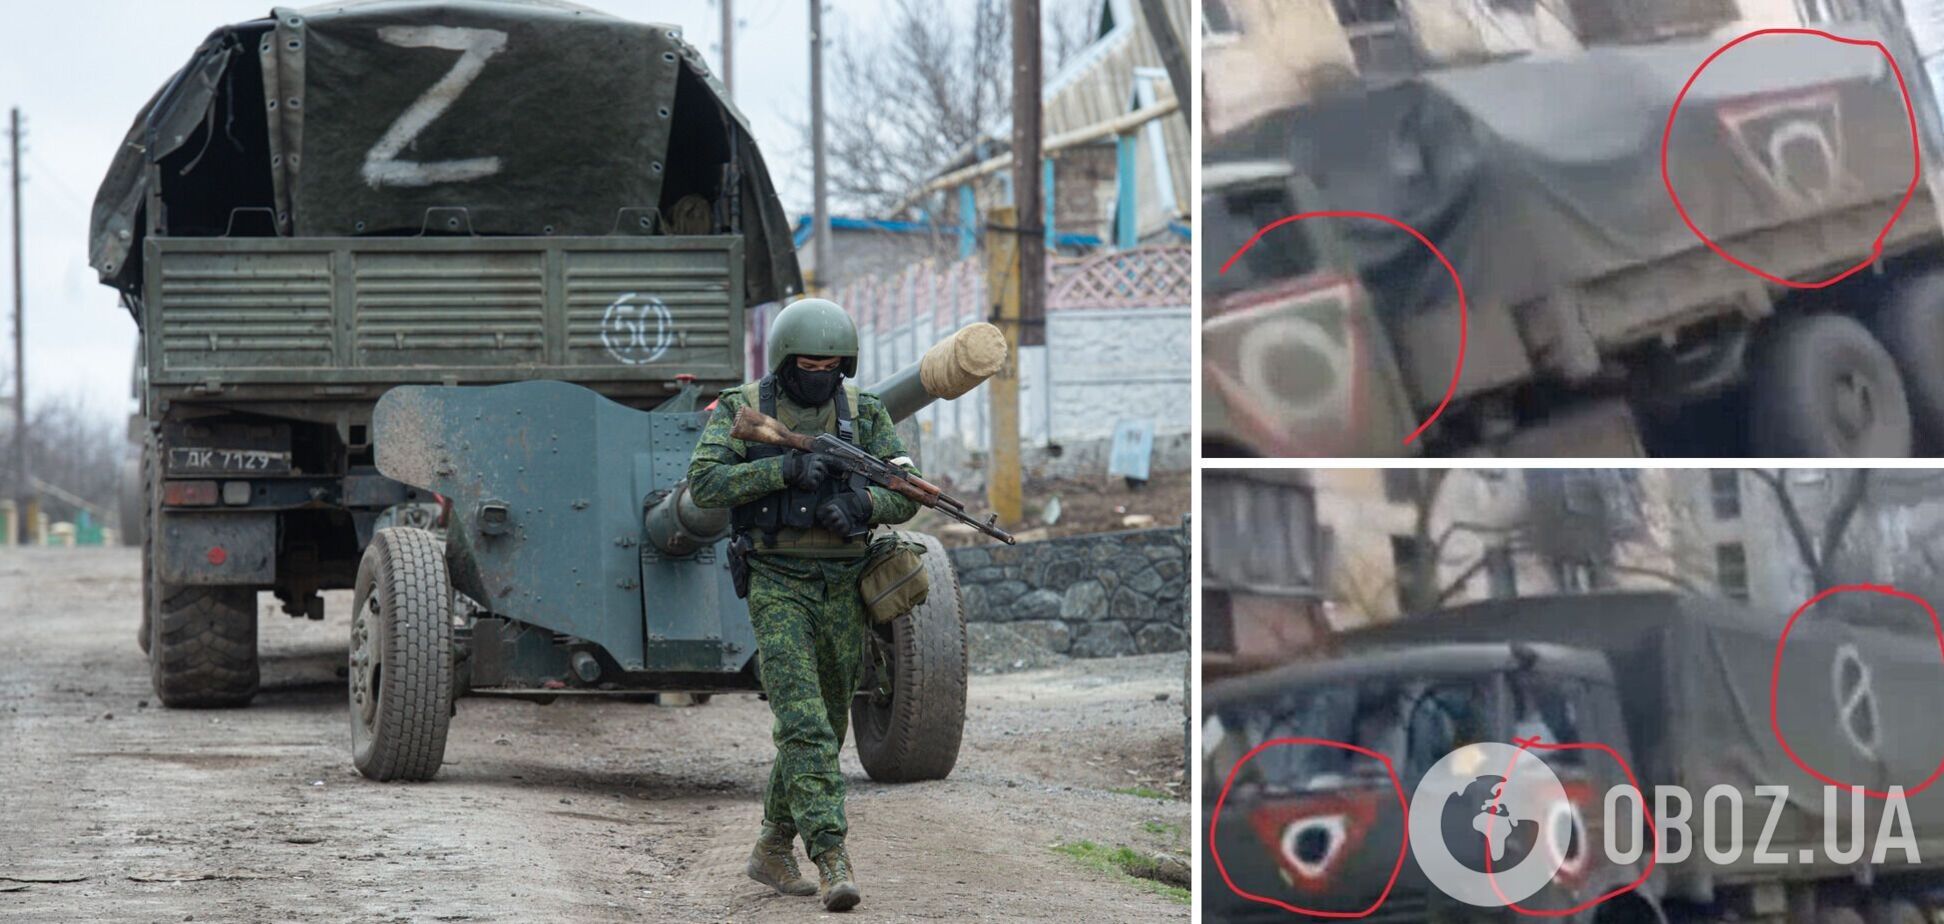 В Мариуполе на технике оккупантов заметили новые отметки, она движется в сторону Донецка. Фото